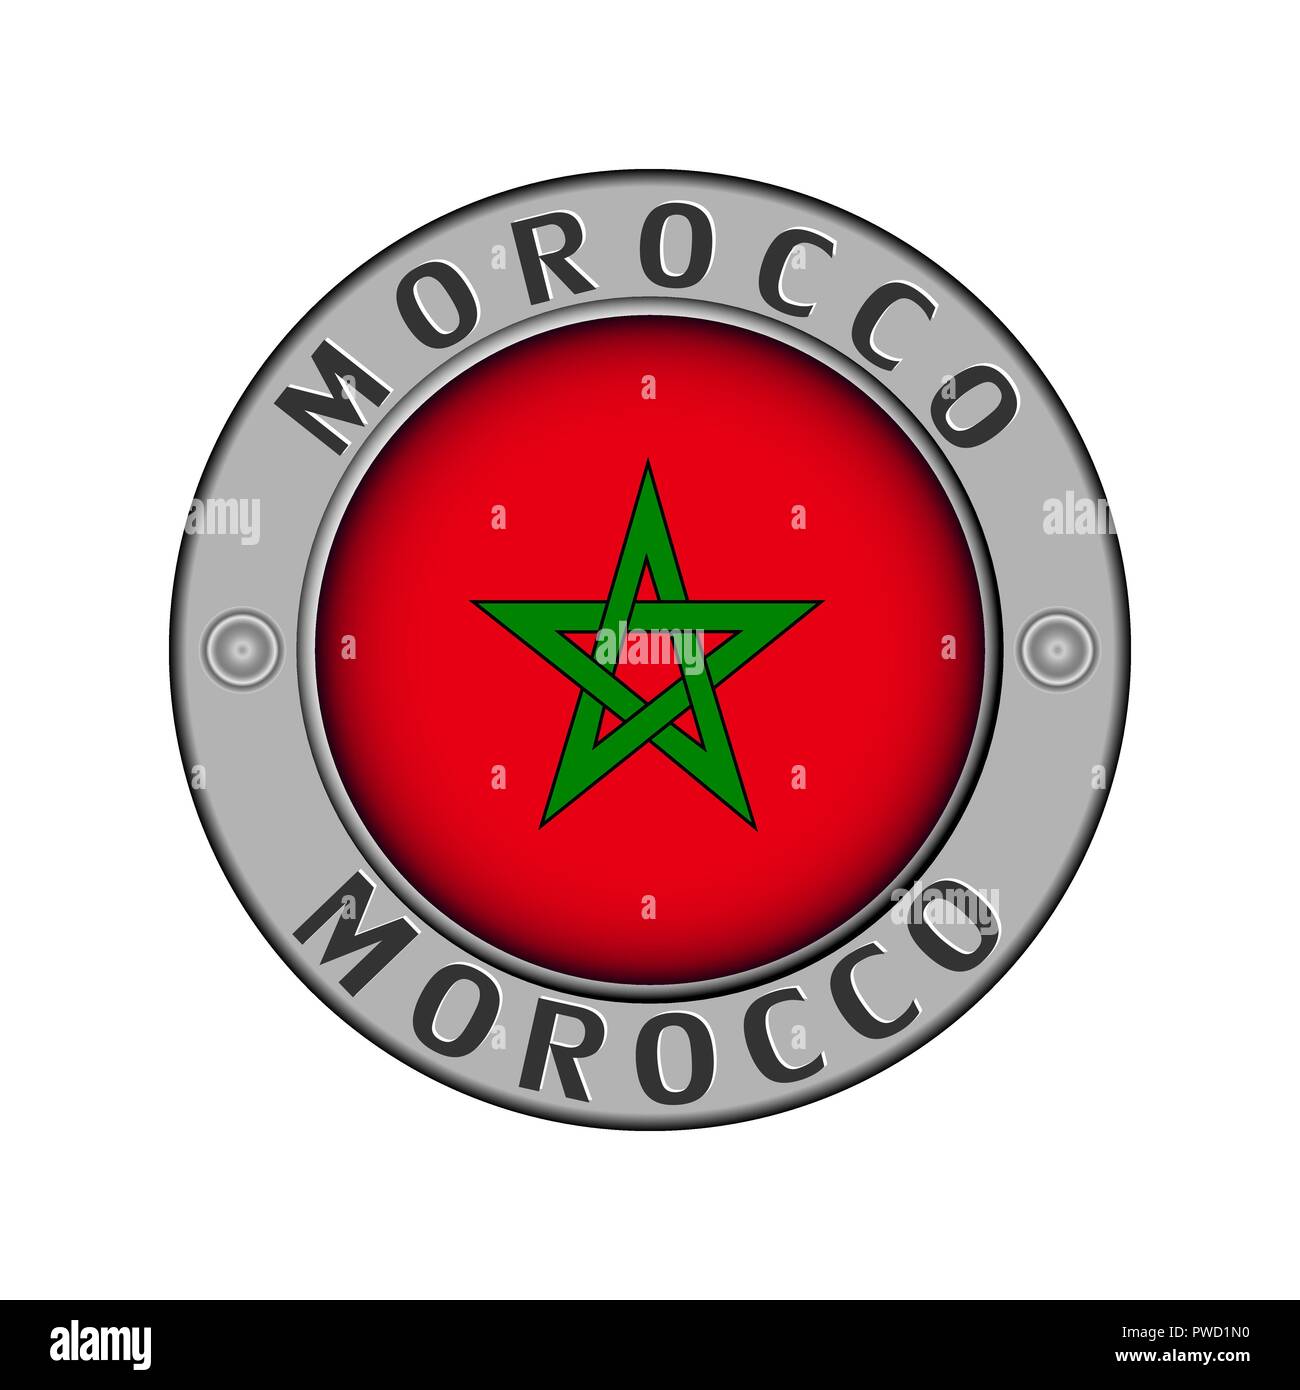 Rotondo di metallo medaglione con il nome del paese del Marocco e un indicatore rotondo nel centro Illustrazione Vettoriale